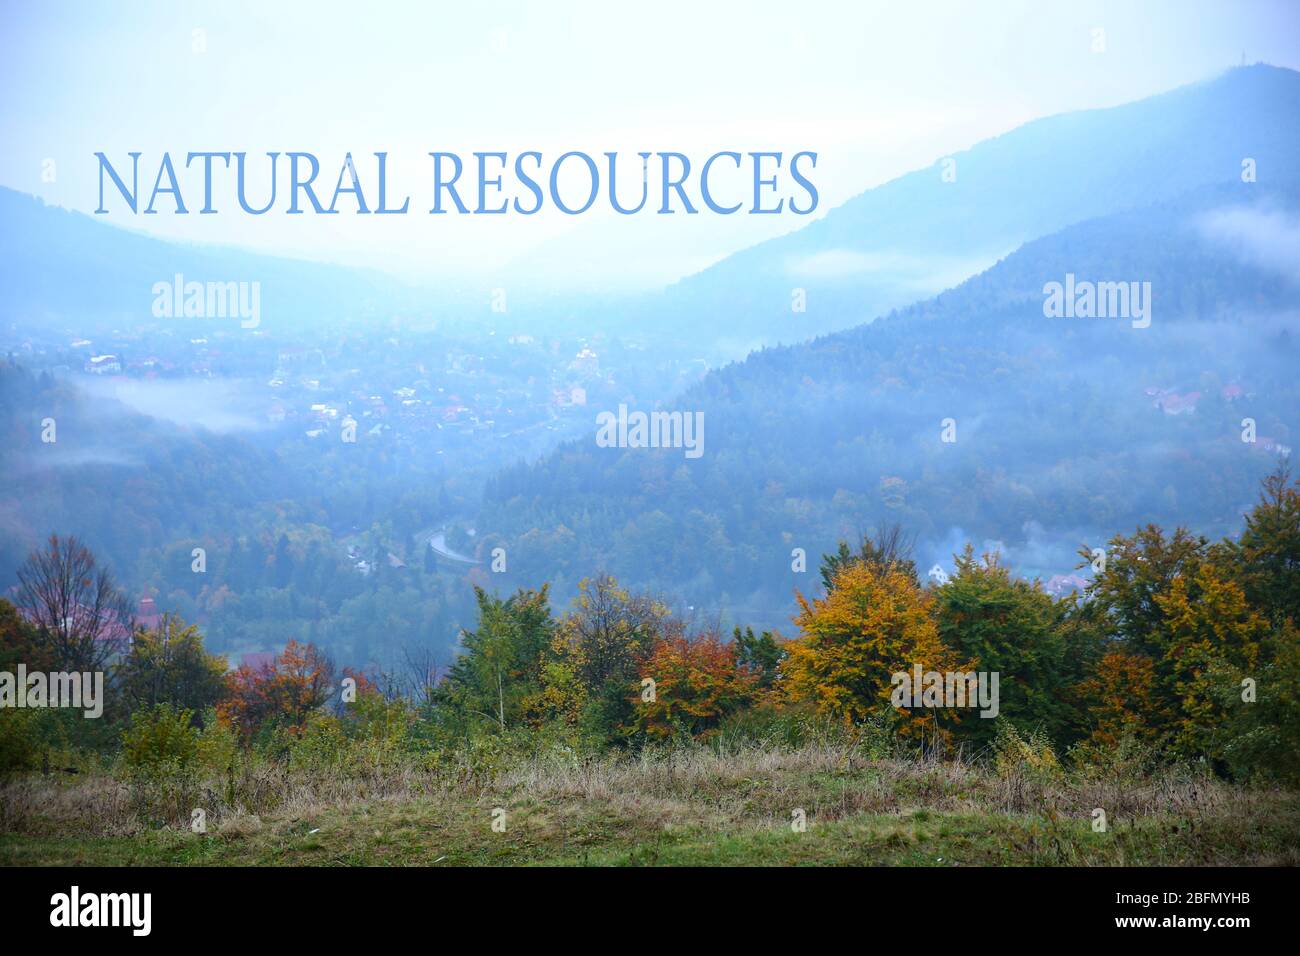 Paysage de village en montagnes. Concept de sauvegarde des ressources naturelles. Banque D'Images